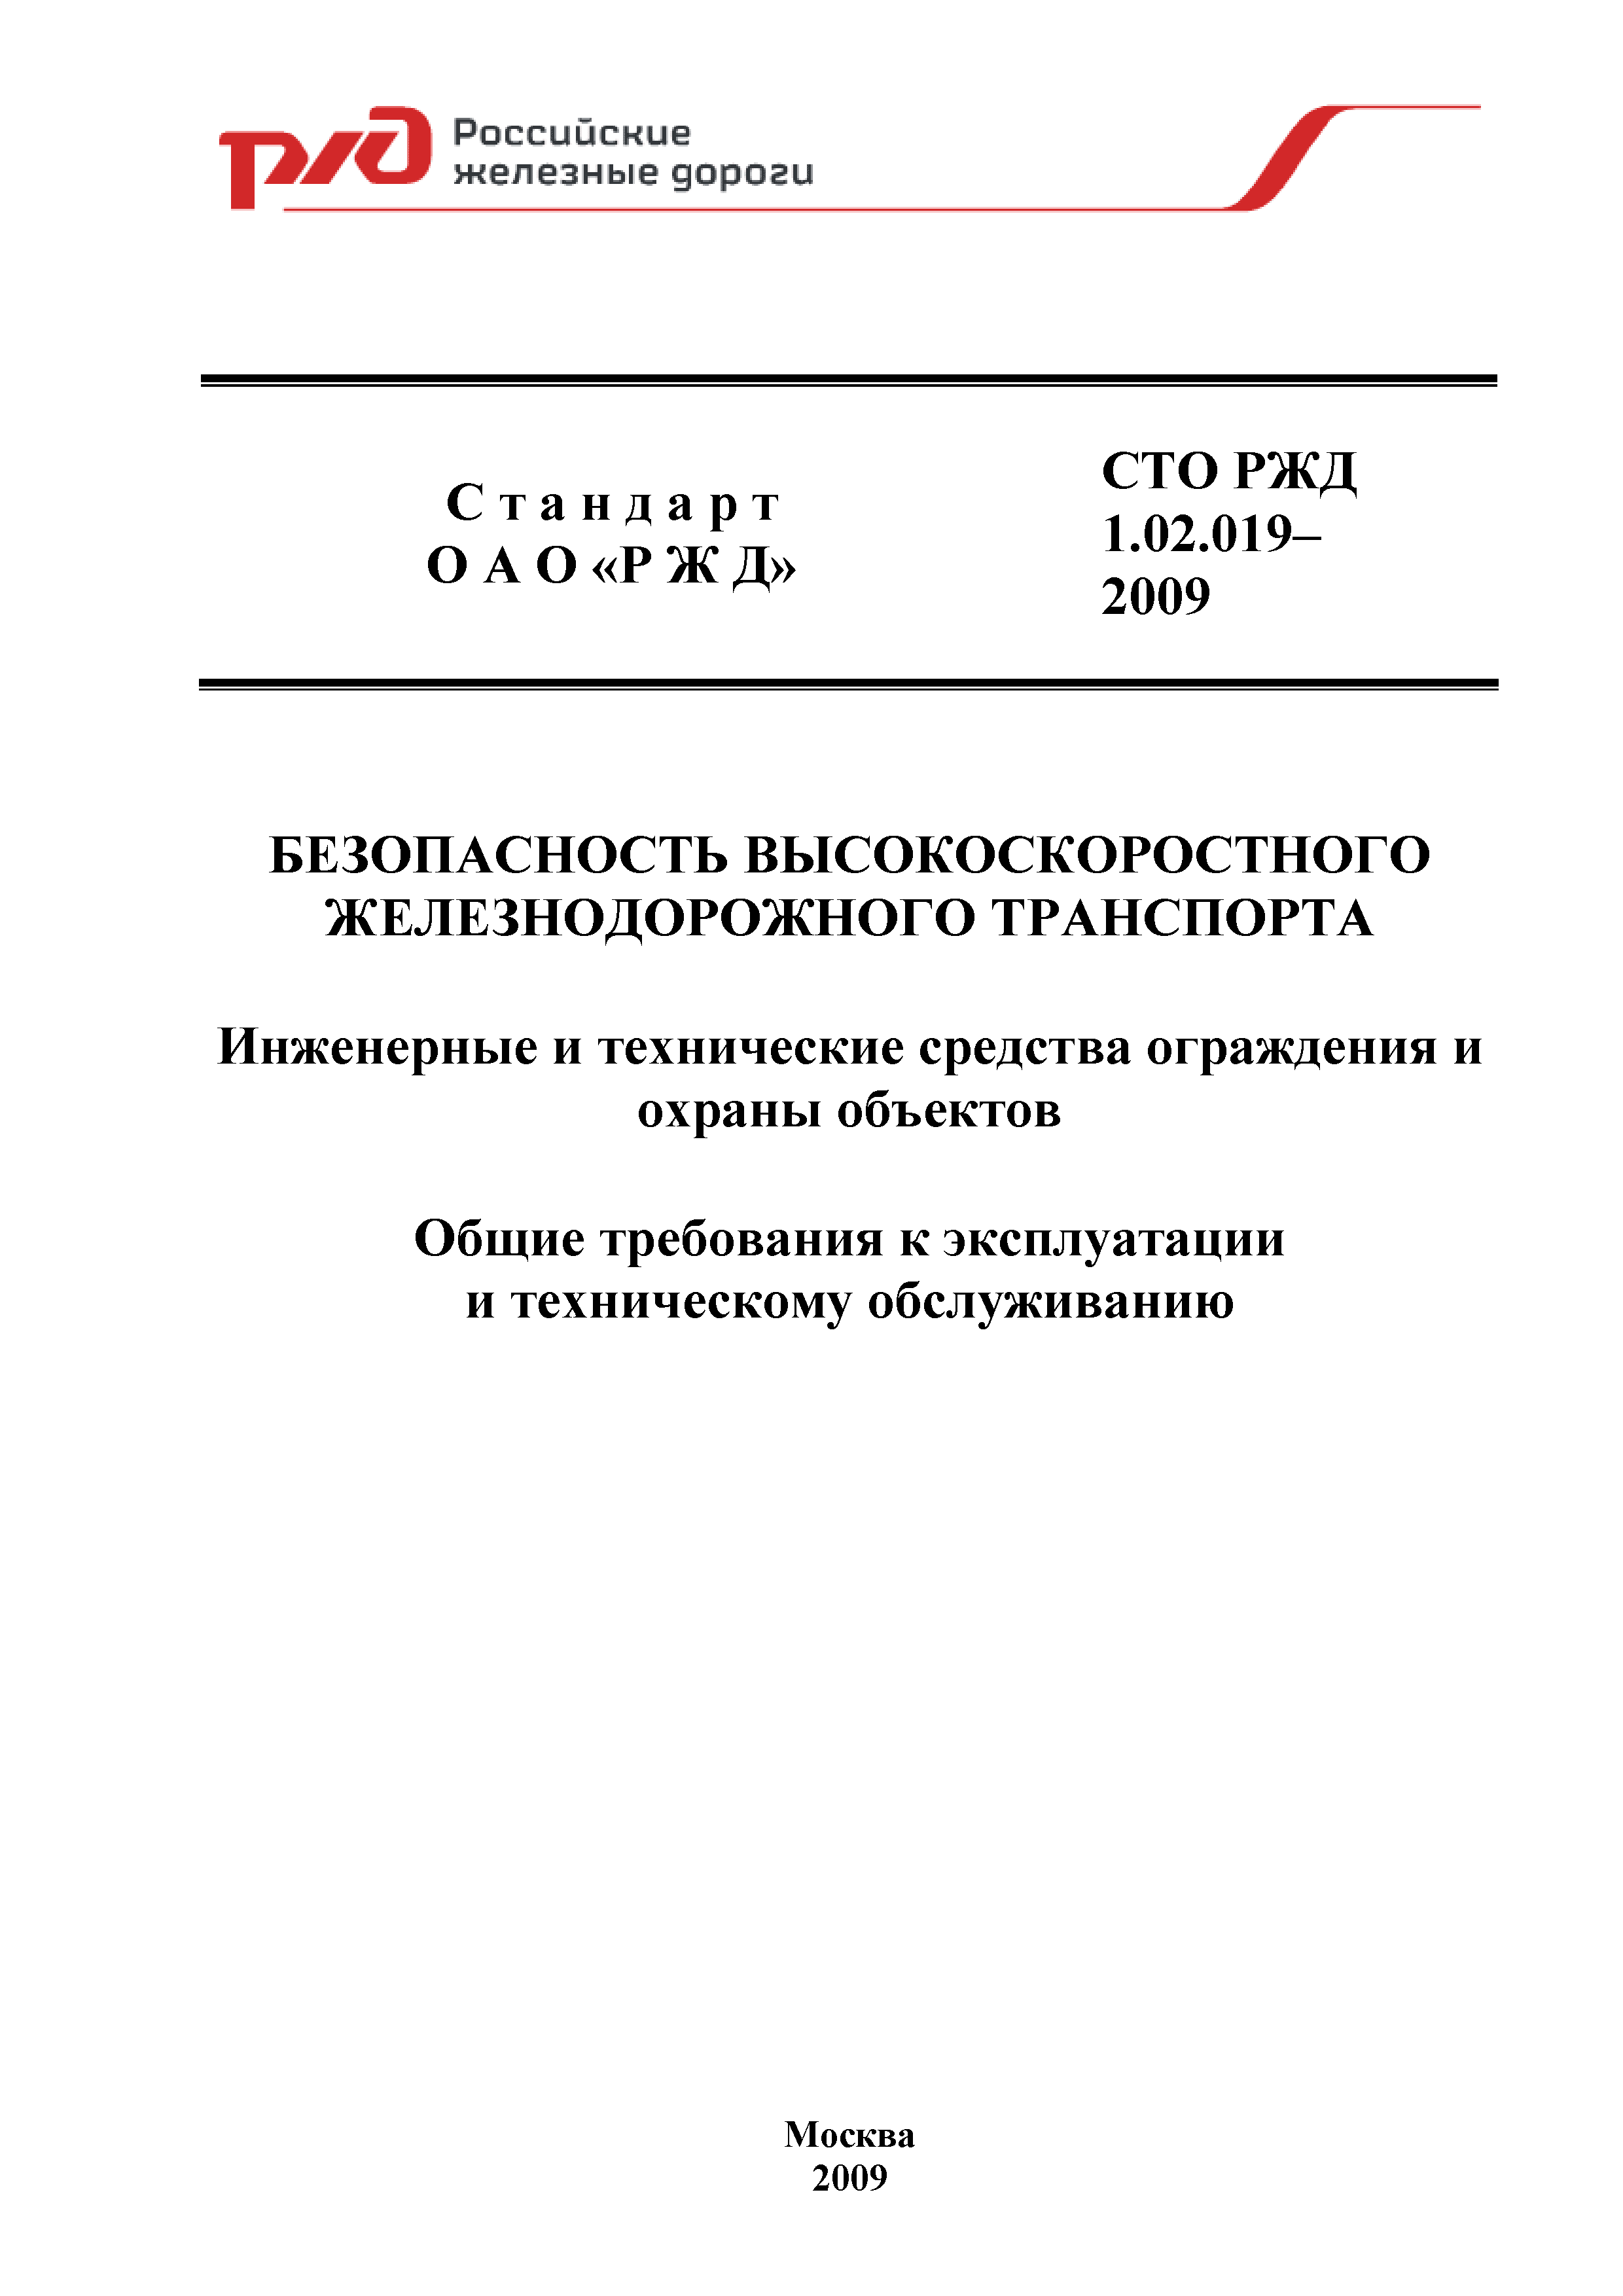 СТО РЖД 1.02.019-2009